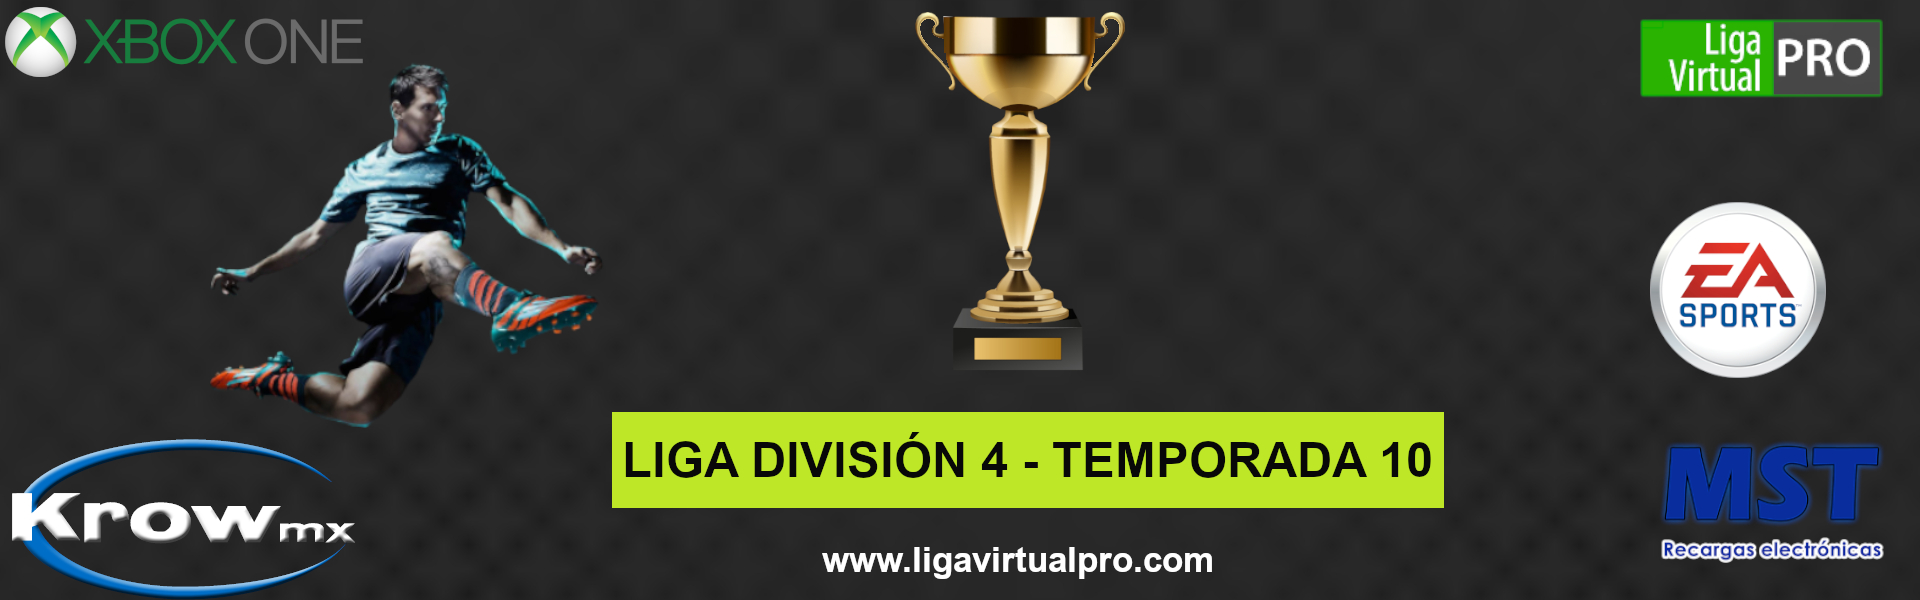 Logo-LIGA DIVISION 4 (A) - TEMPORADA 10